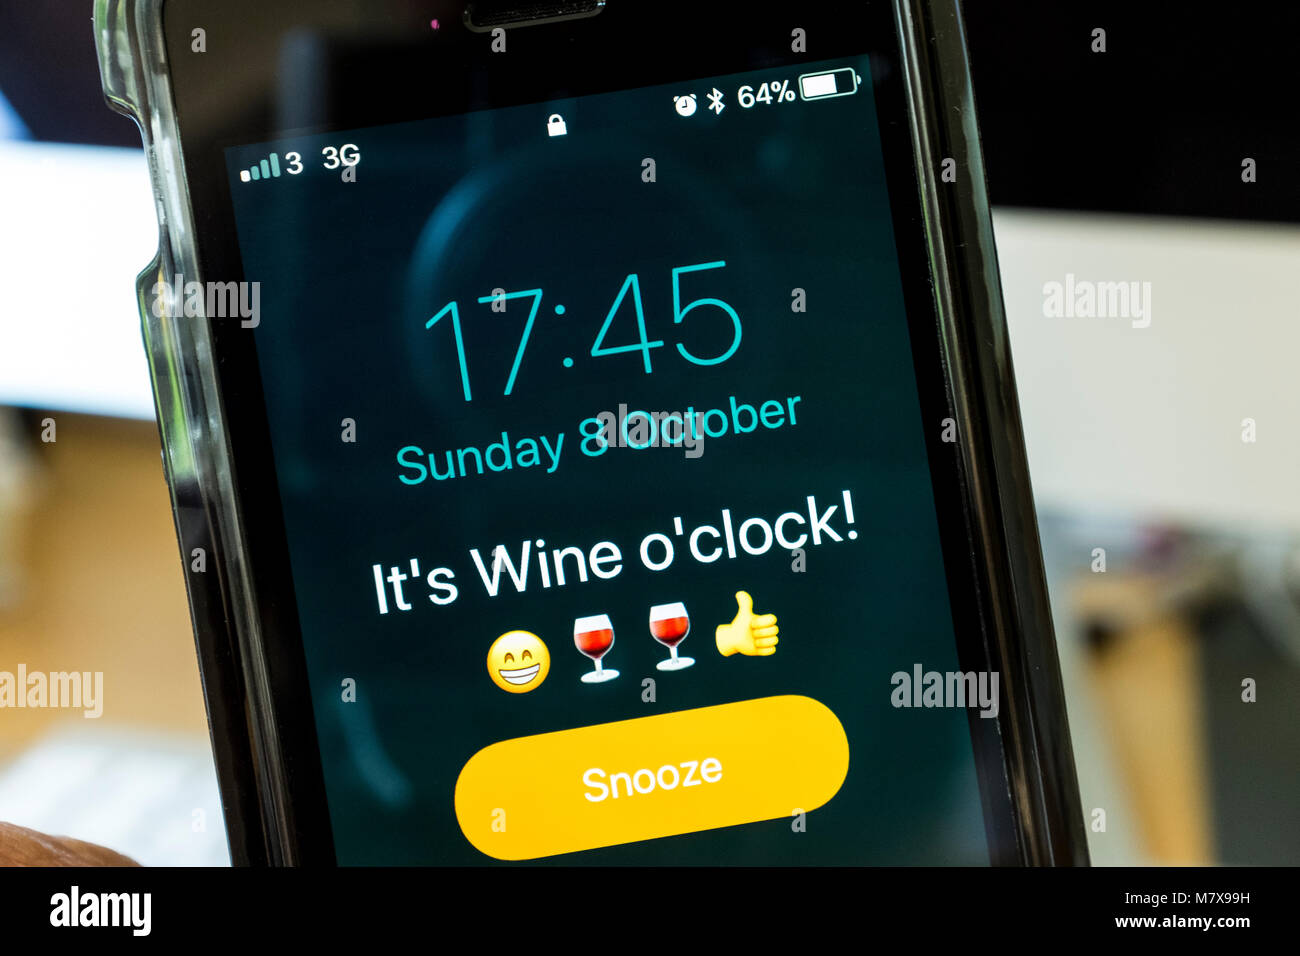 Allarme su iPhone dicendo che è il vino o'clock. Foto Stock